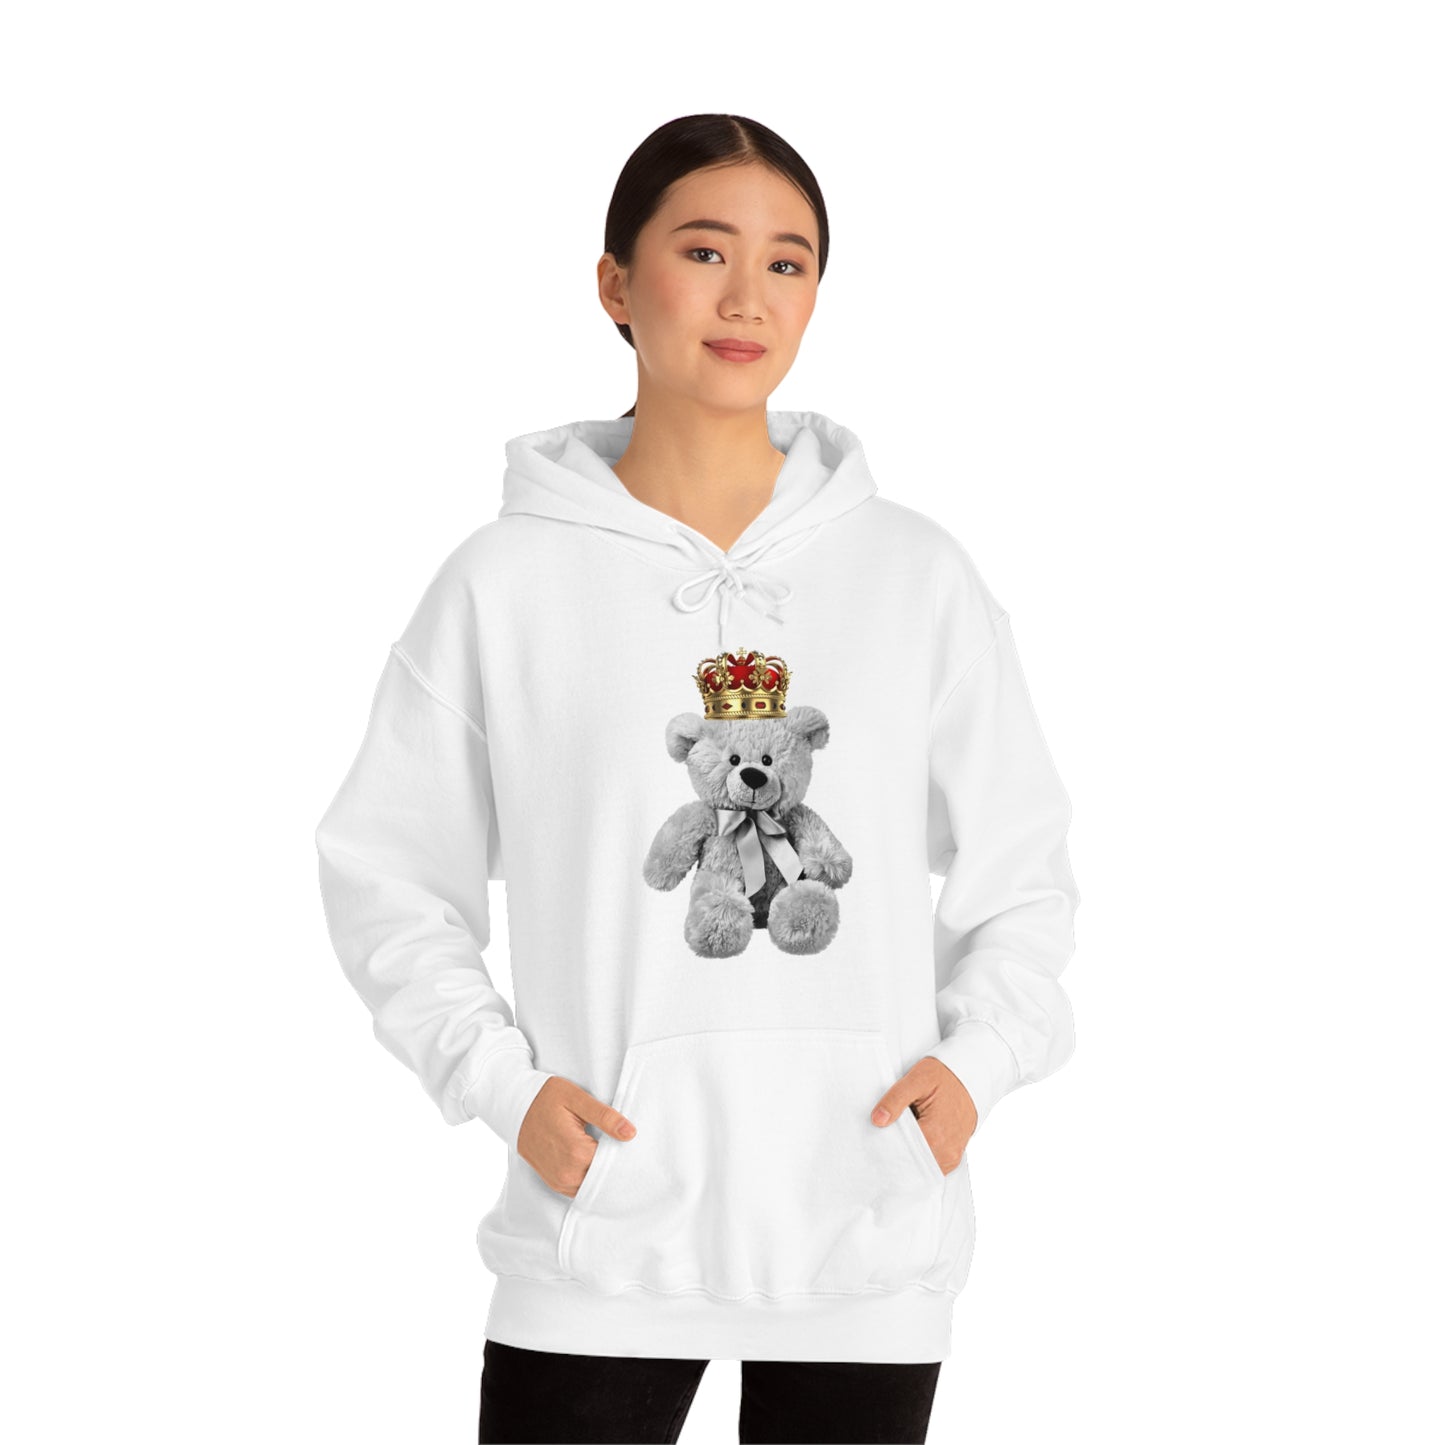 Teddy Bear Heavy Blend™ Hooded Sweatshirt